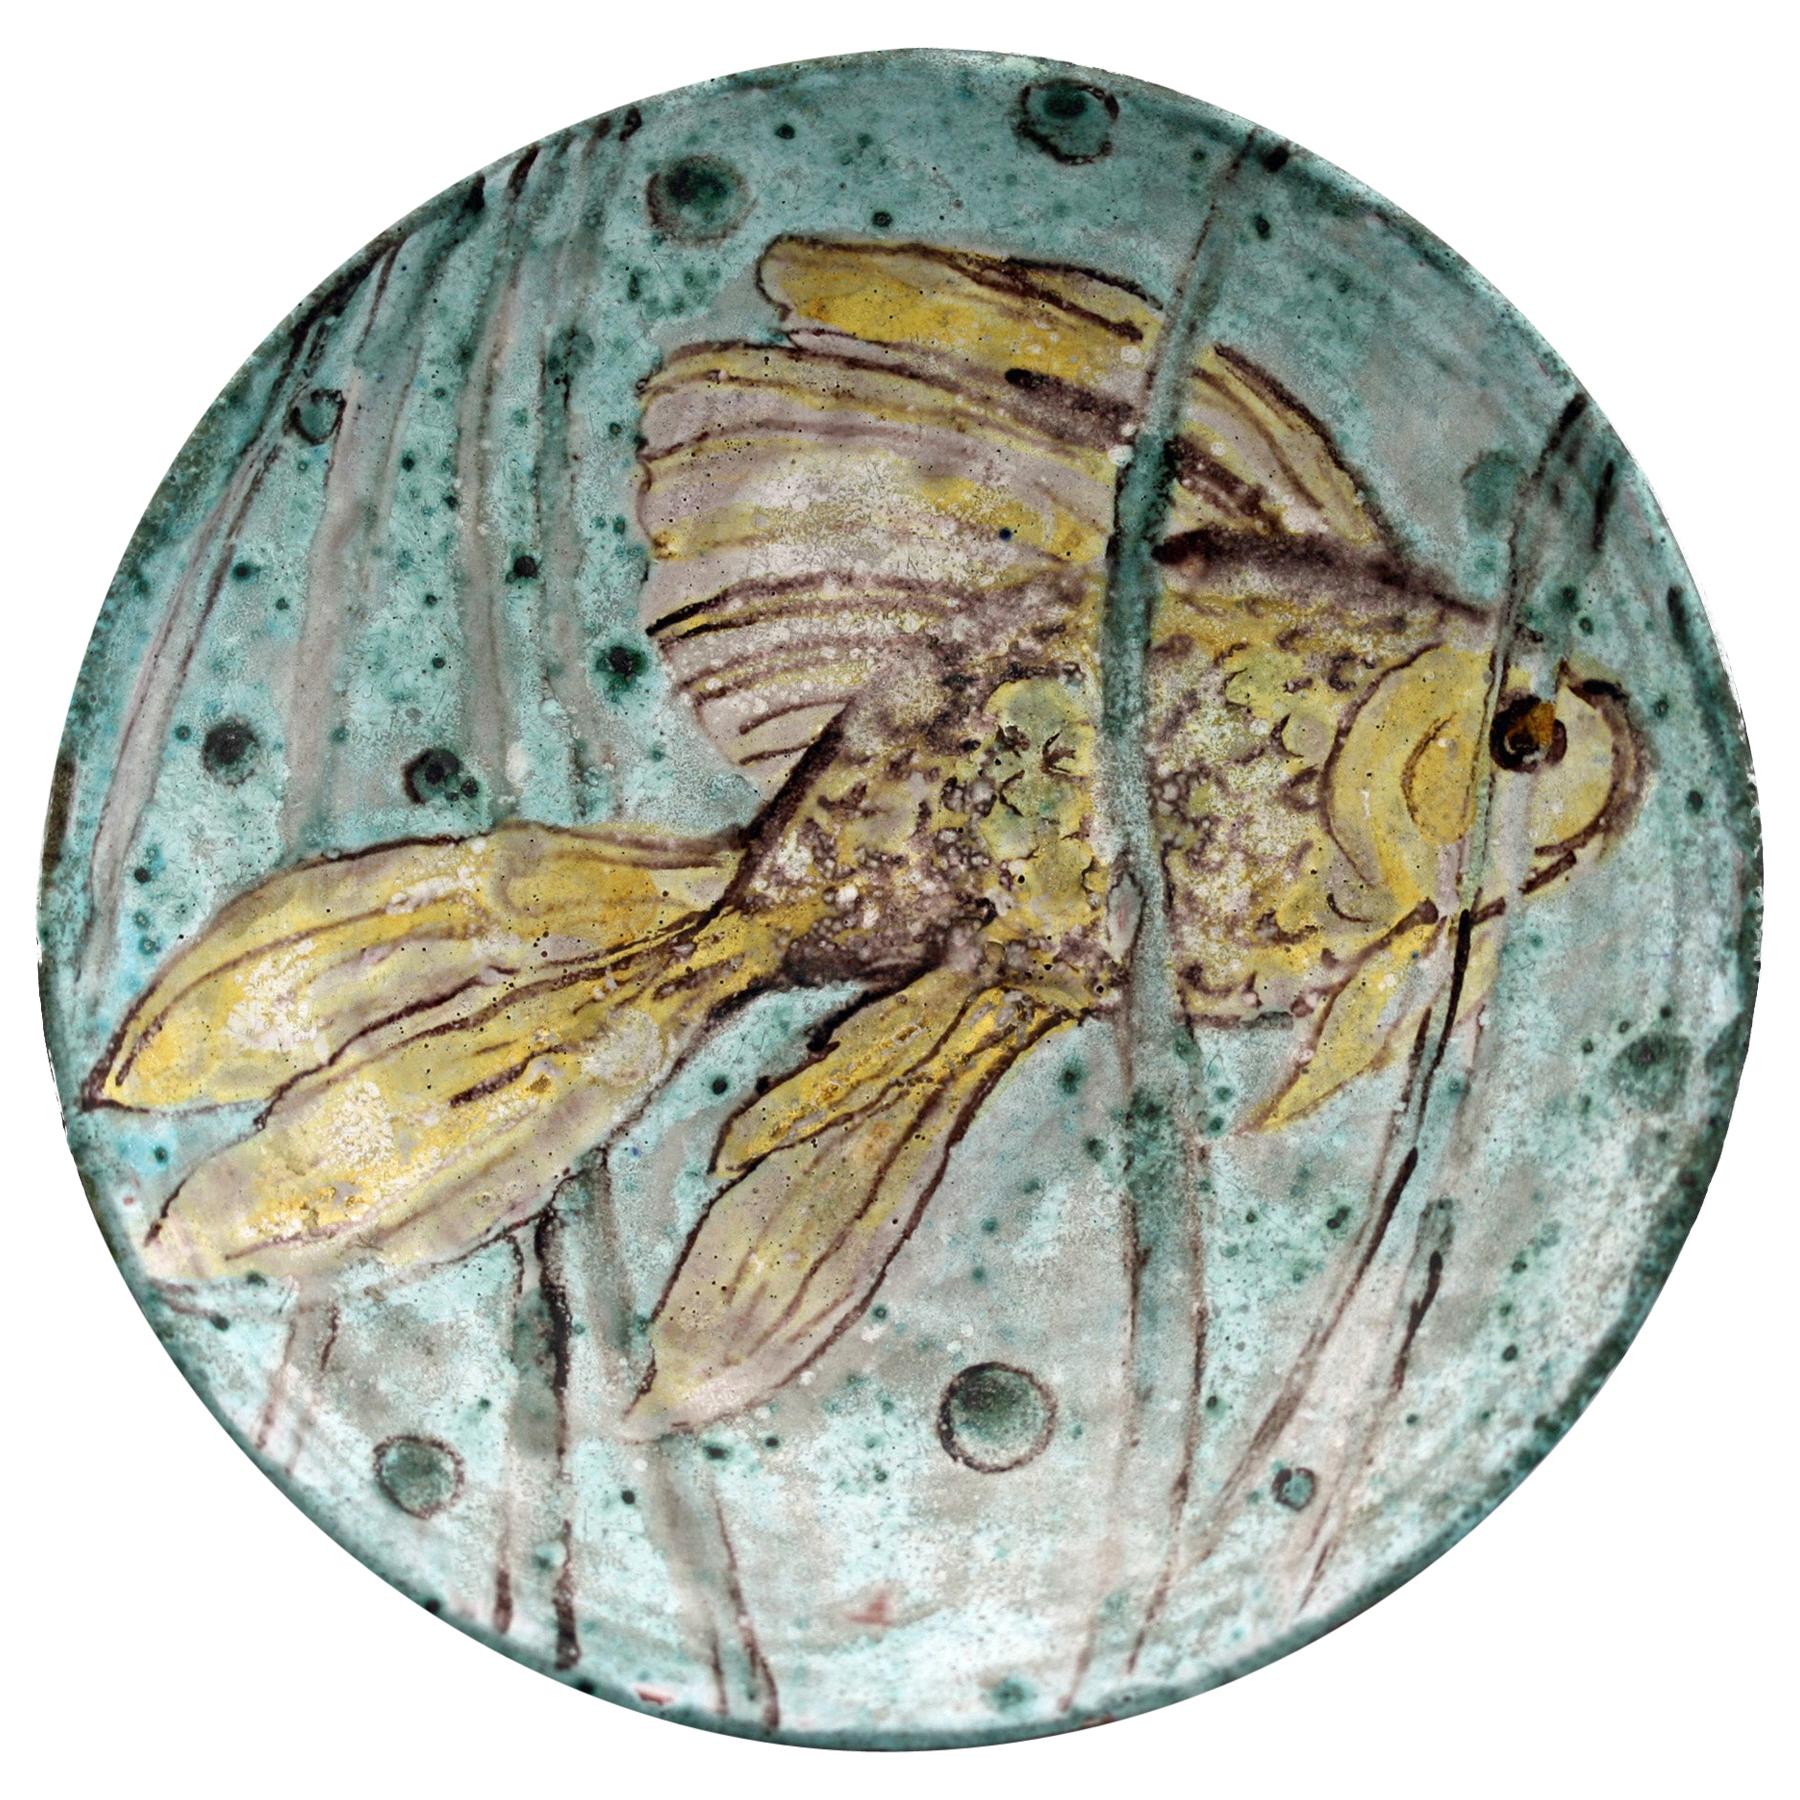 Instinktiv signierte Studio Pottery Schale mit einem Fisch bemalt, Mitte des Jahrhunderts